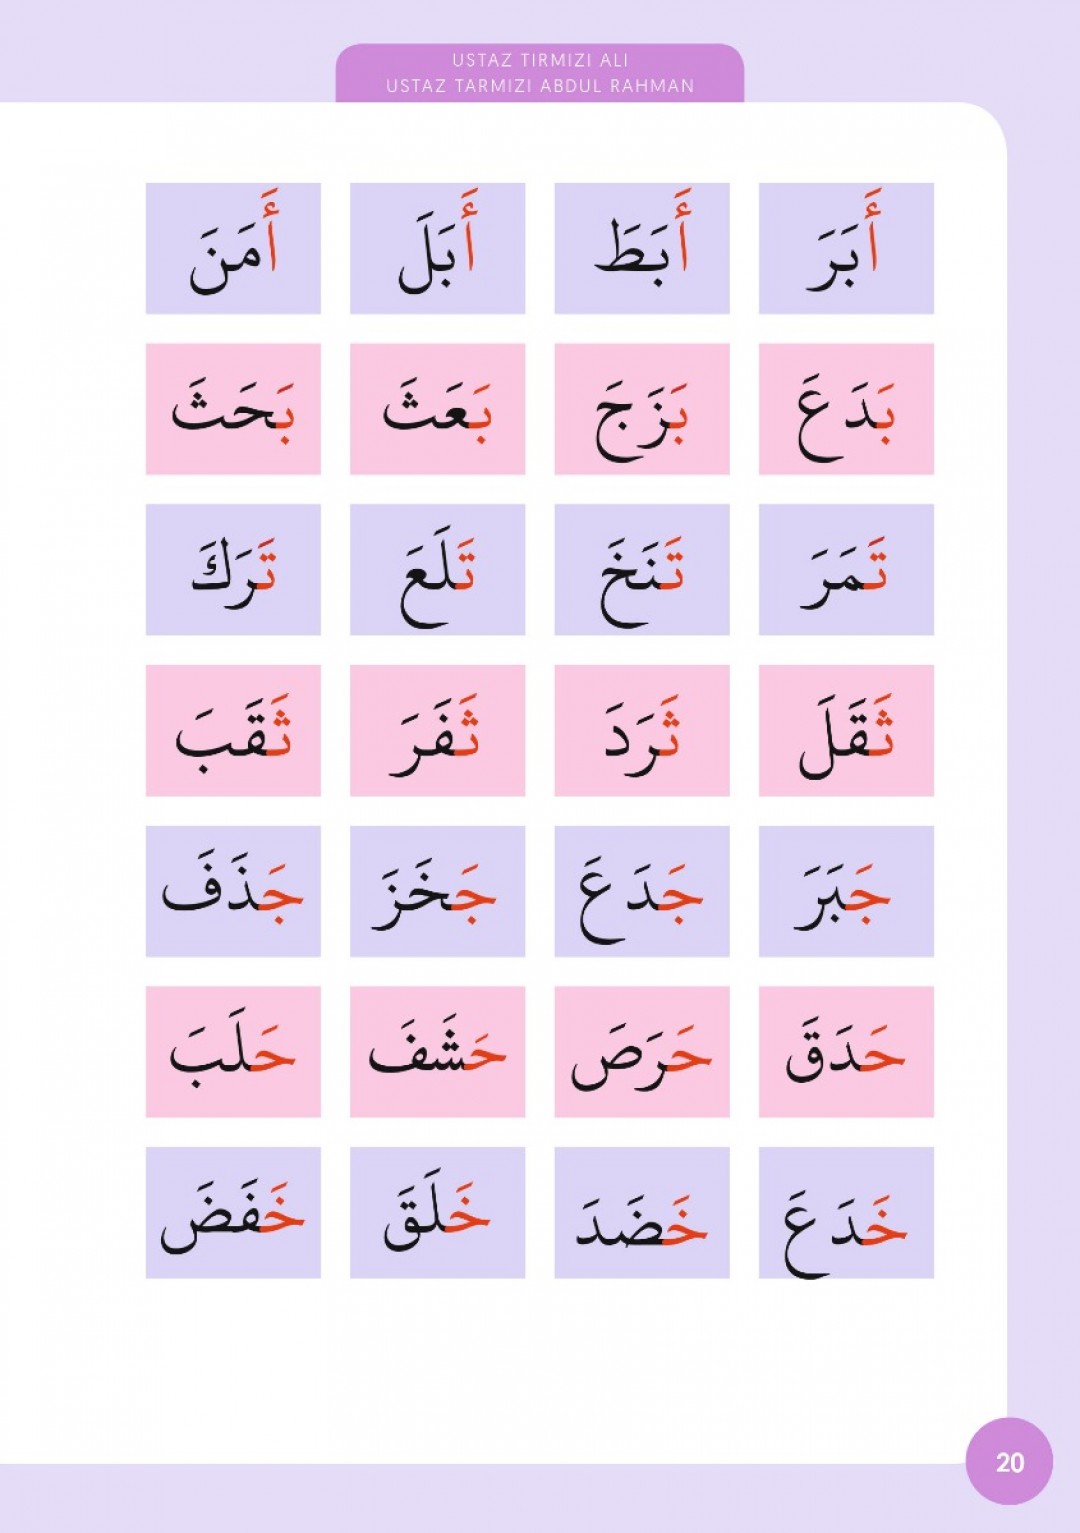 IQRA Teknik Pantas Baca al-Quran